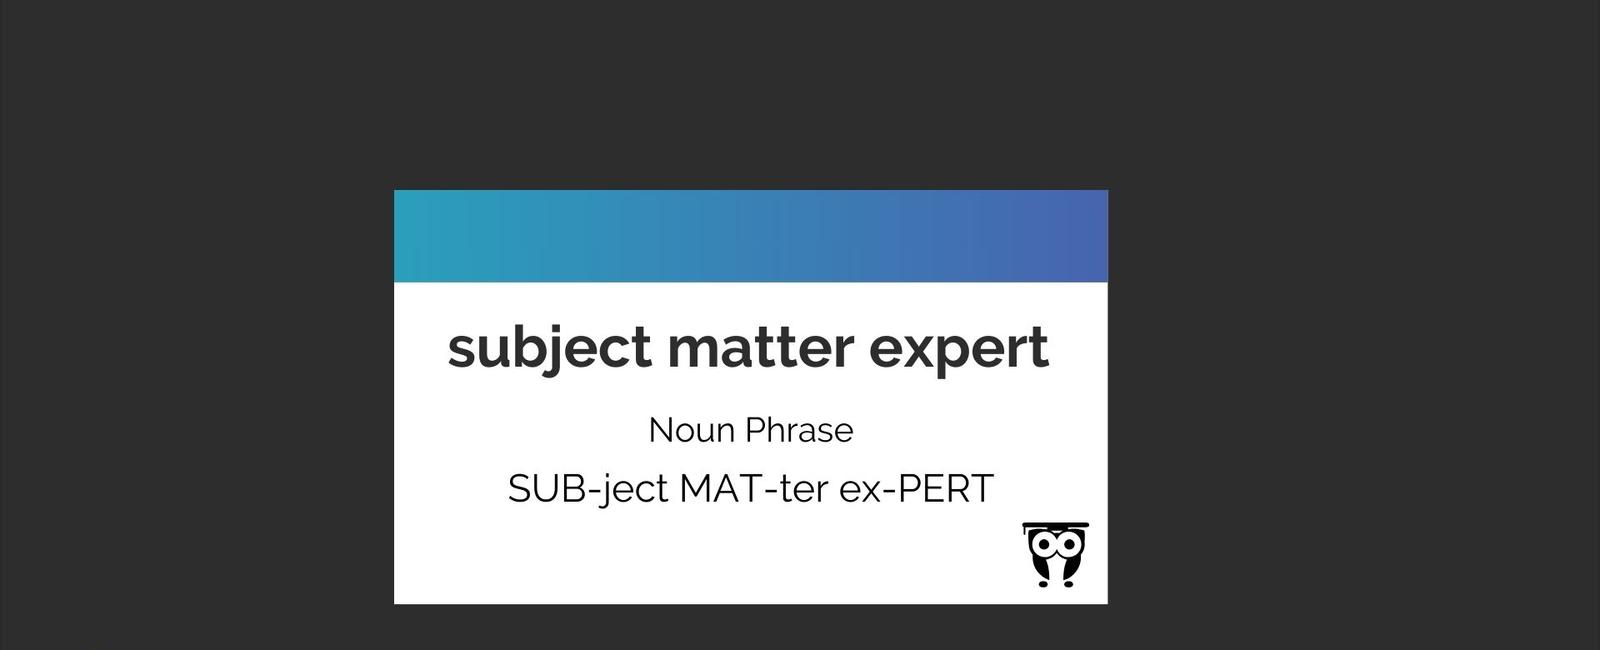 Subject Matter Expert